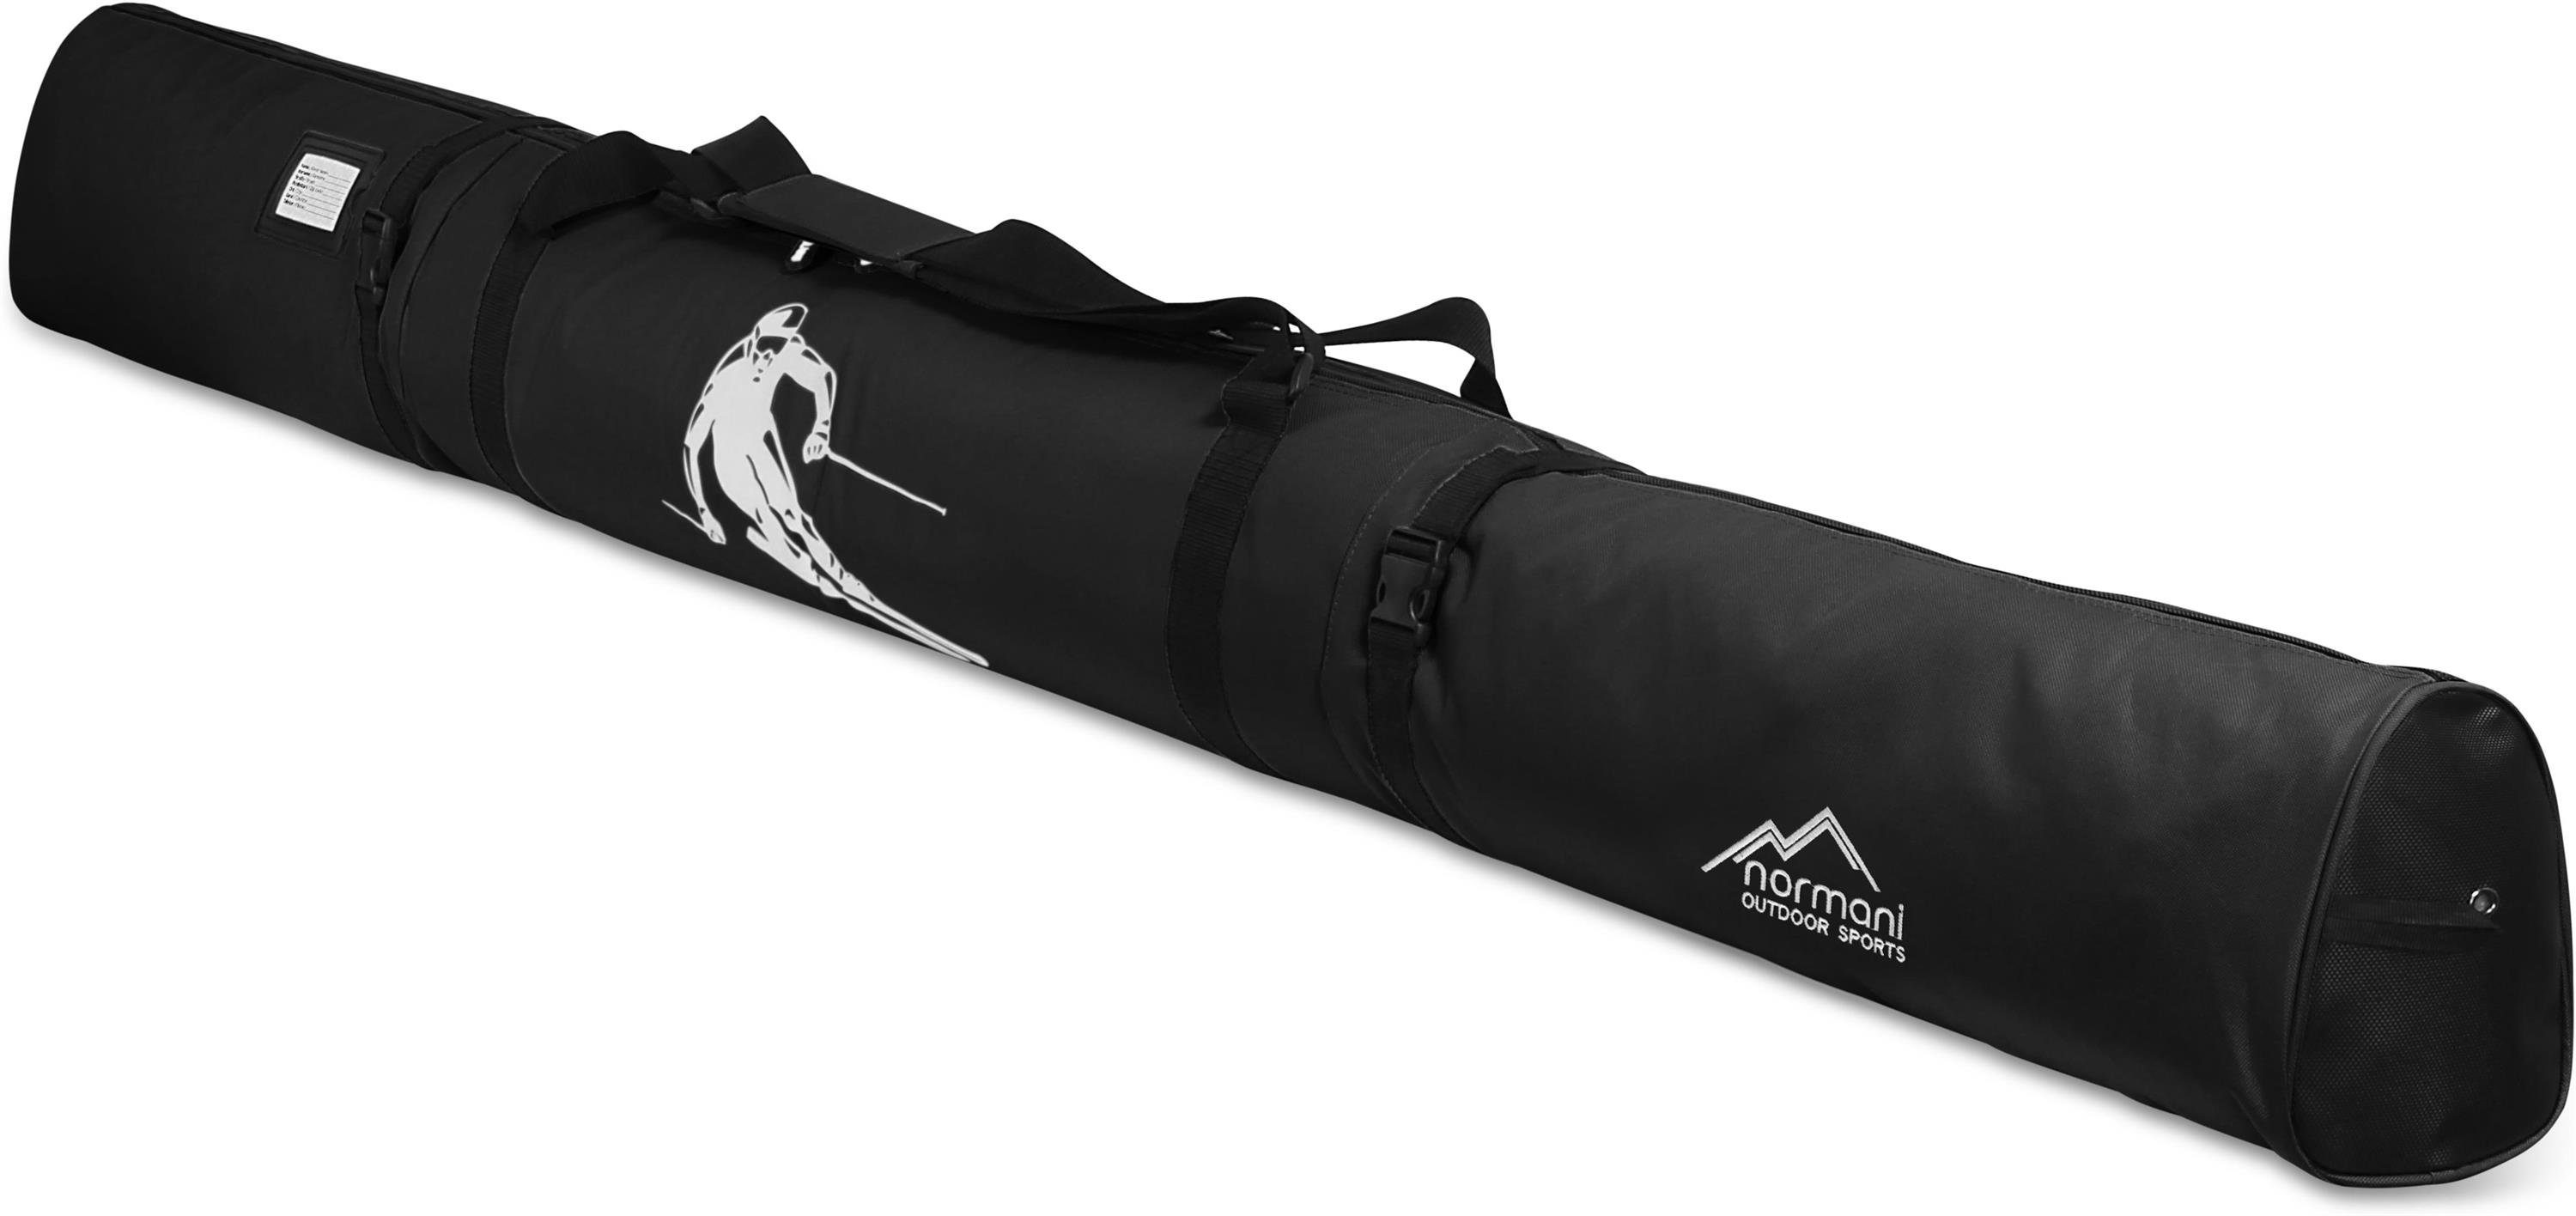 Skier Skitasche und Alpine Skitasche Aufbewahrungstasche normani Transporttasche Skistöcke Schwarz für Sporttasche - 200, Skisack Run